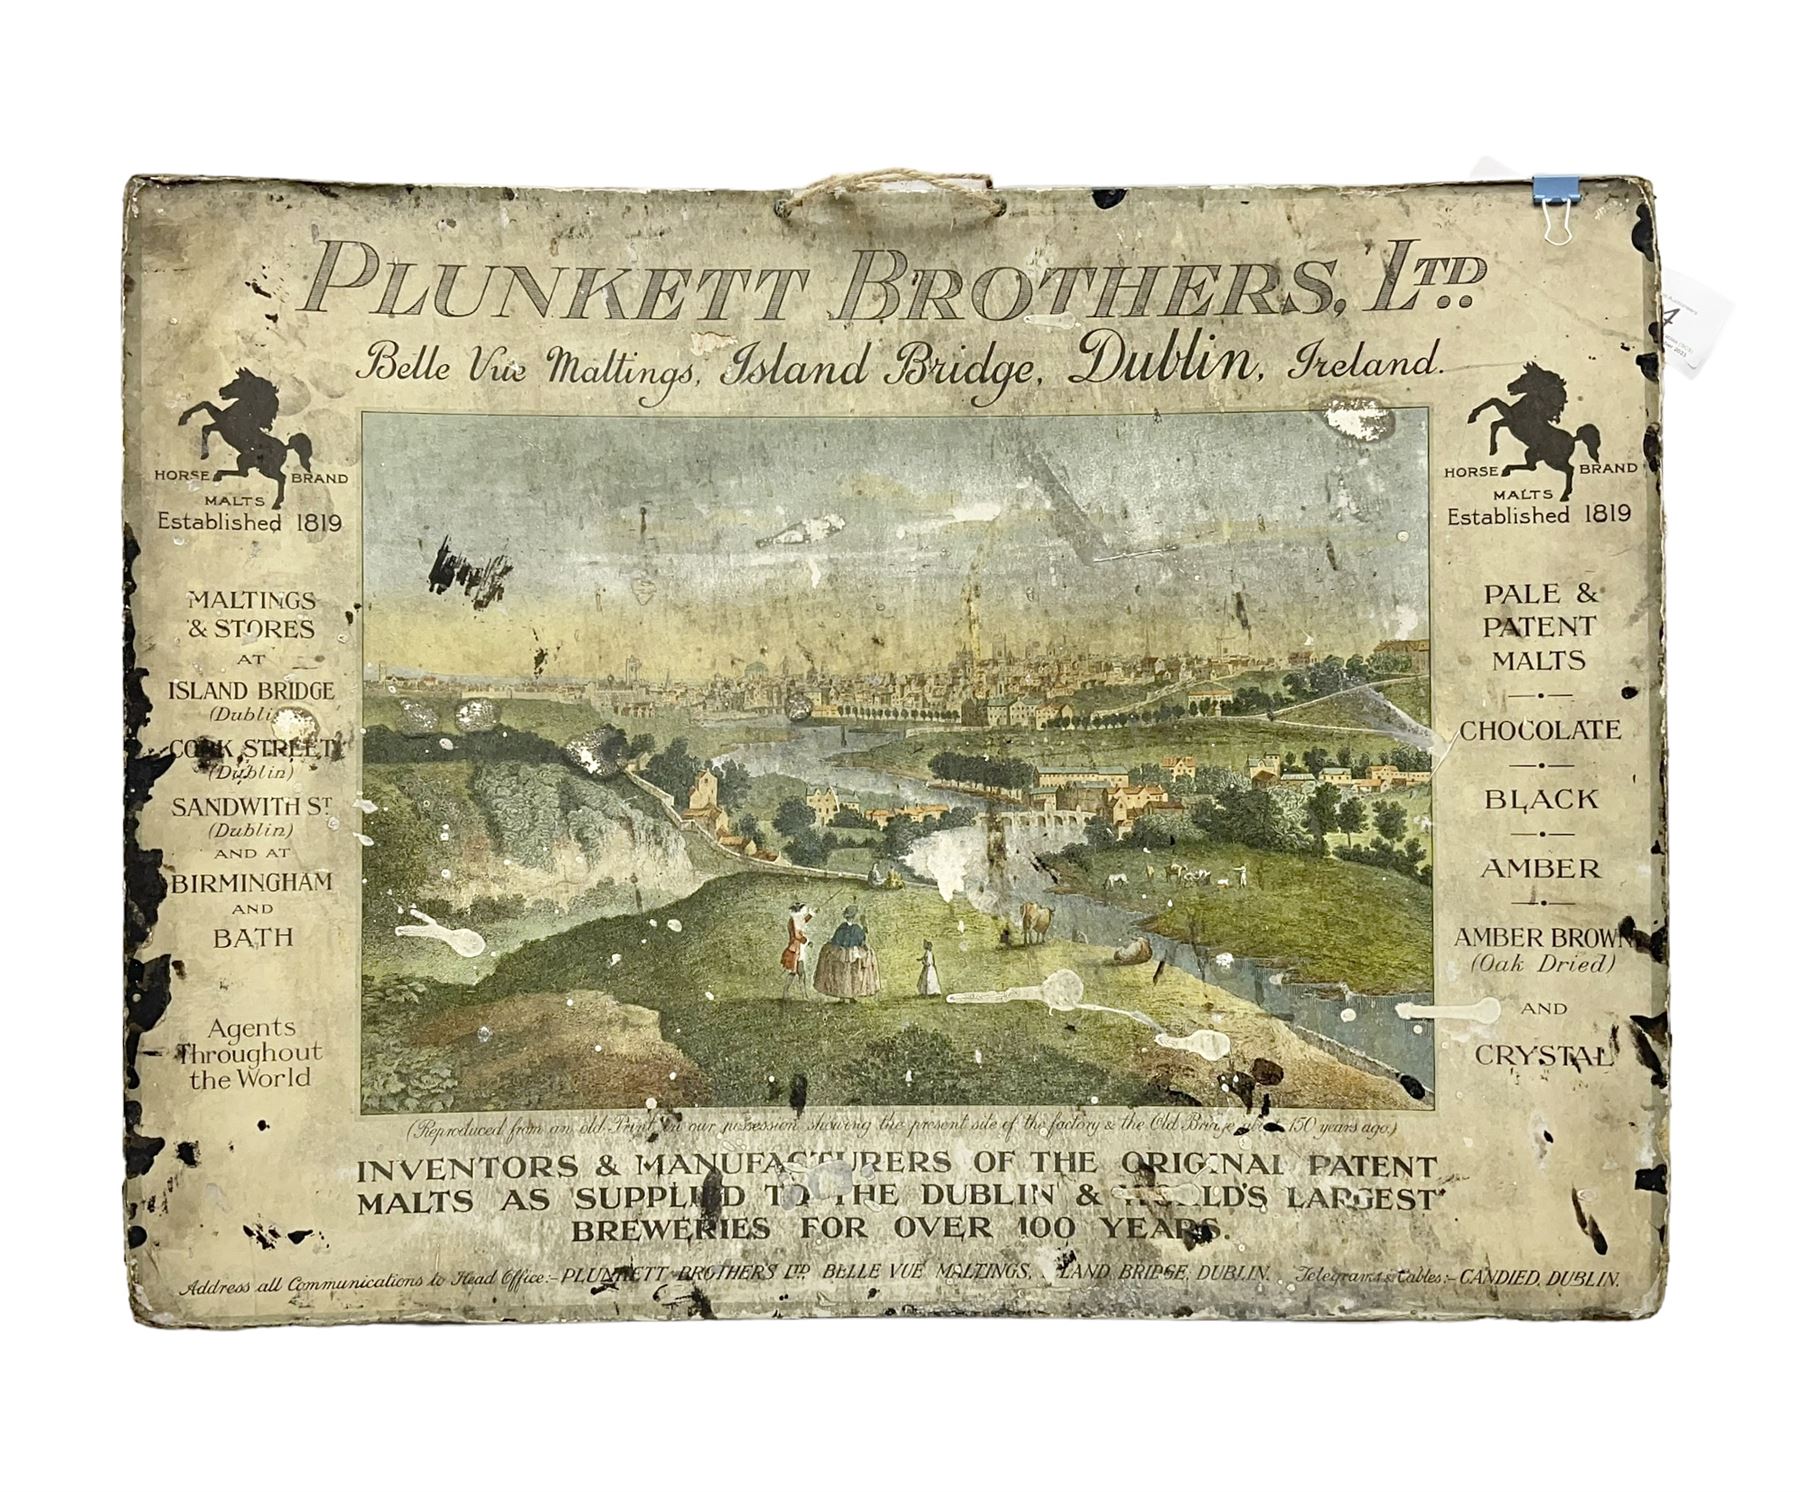 Plinkett Brothers Ltd advertising sign